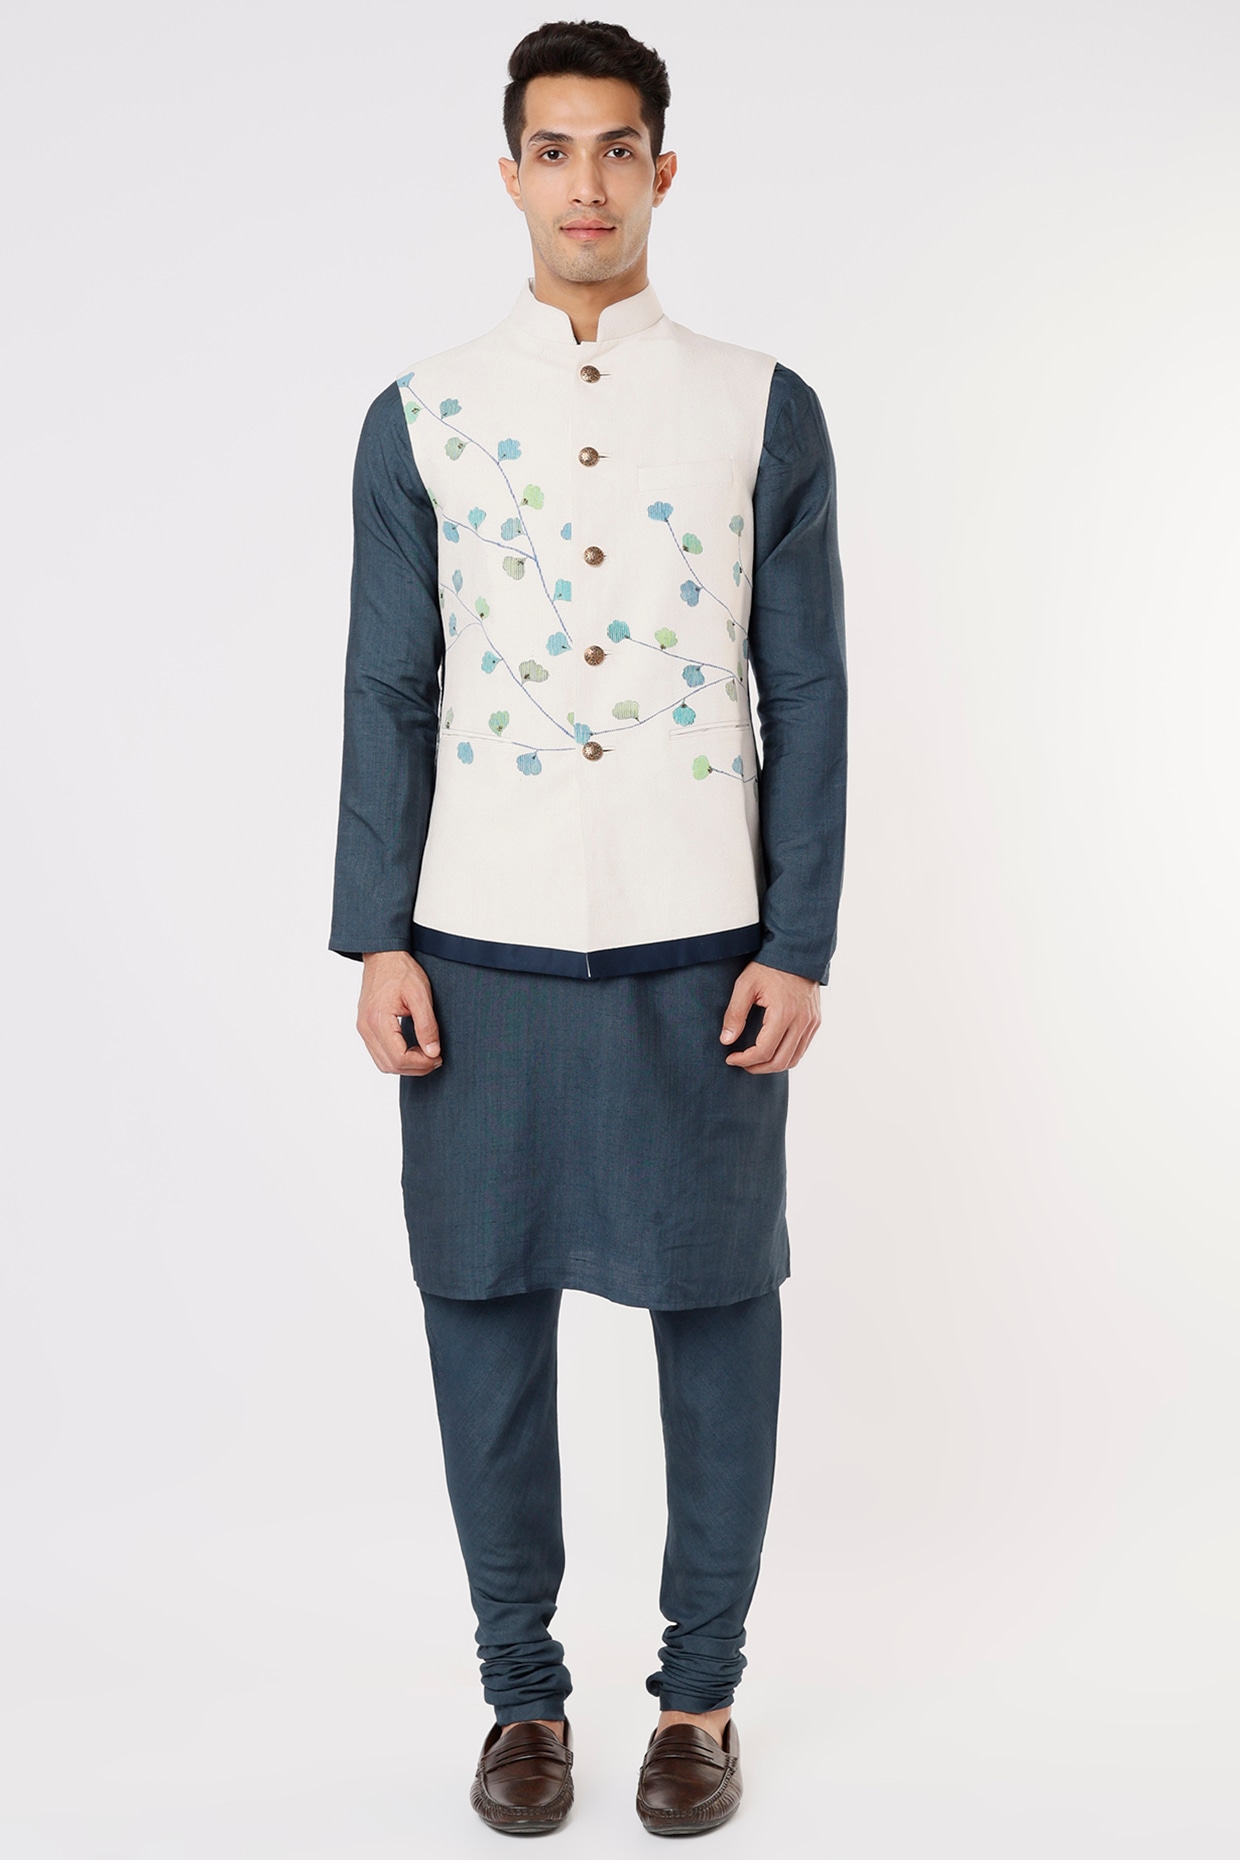 Kurta Pajama Jacket,nehru Jacket,sherwani for Men, Partywear,lucknowi  Chikankari Suit, Silk Kurta Pajam, Long Jacket for Men, Customised - Etsy